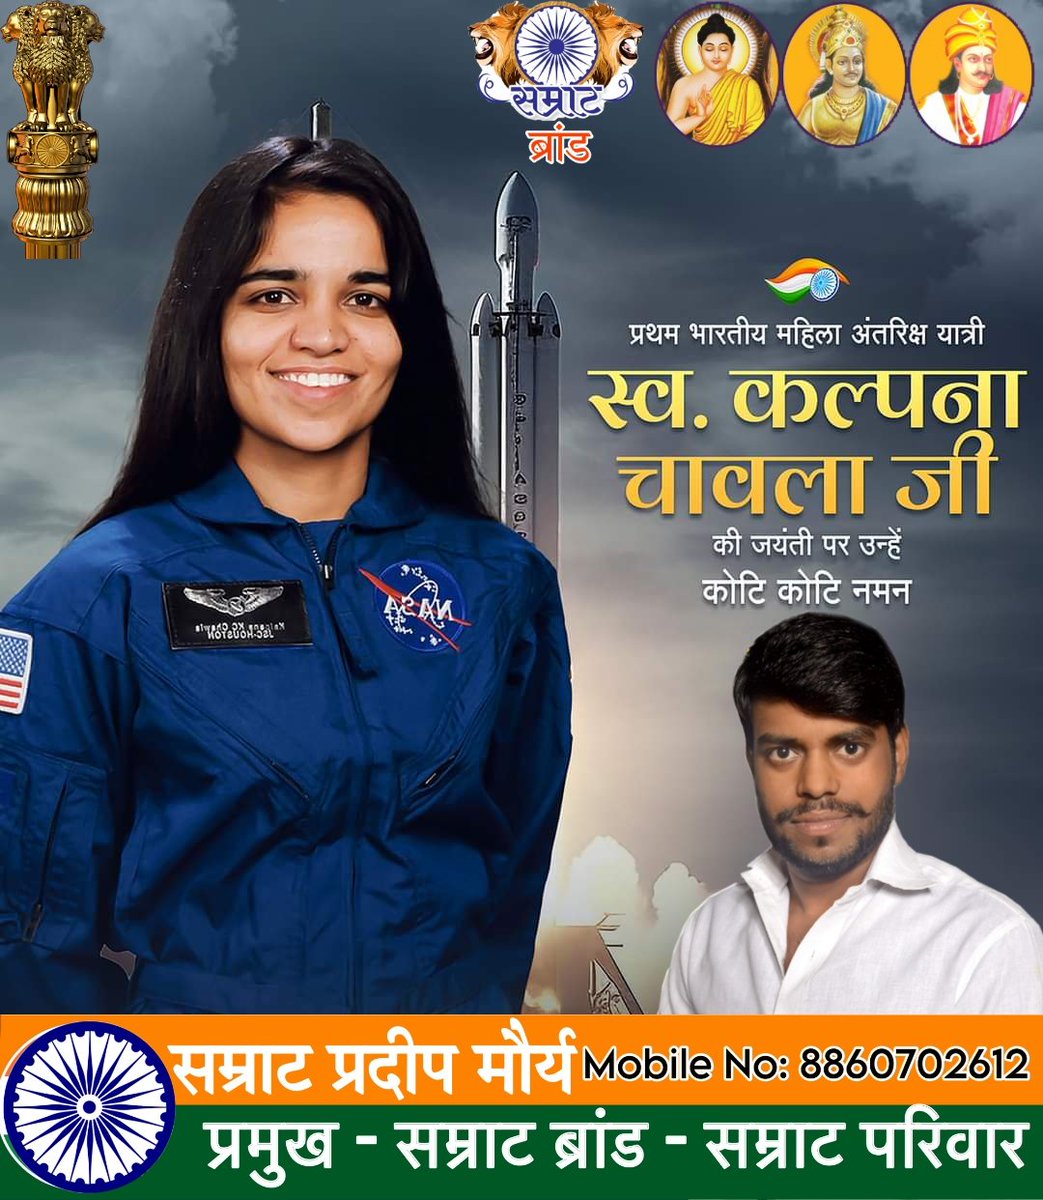 भारत की महान बेटी, युवा वर्ग की प्रेरणा और भारत की प्रथम महिला अंतरिक्ष यात्री 'कल्पना चावला जी ' की जयंती पर उन्हें कोटि-कोटि नमन l
#KalpanaChawla

#कल्पना_चावला_जी